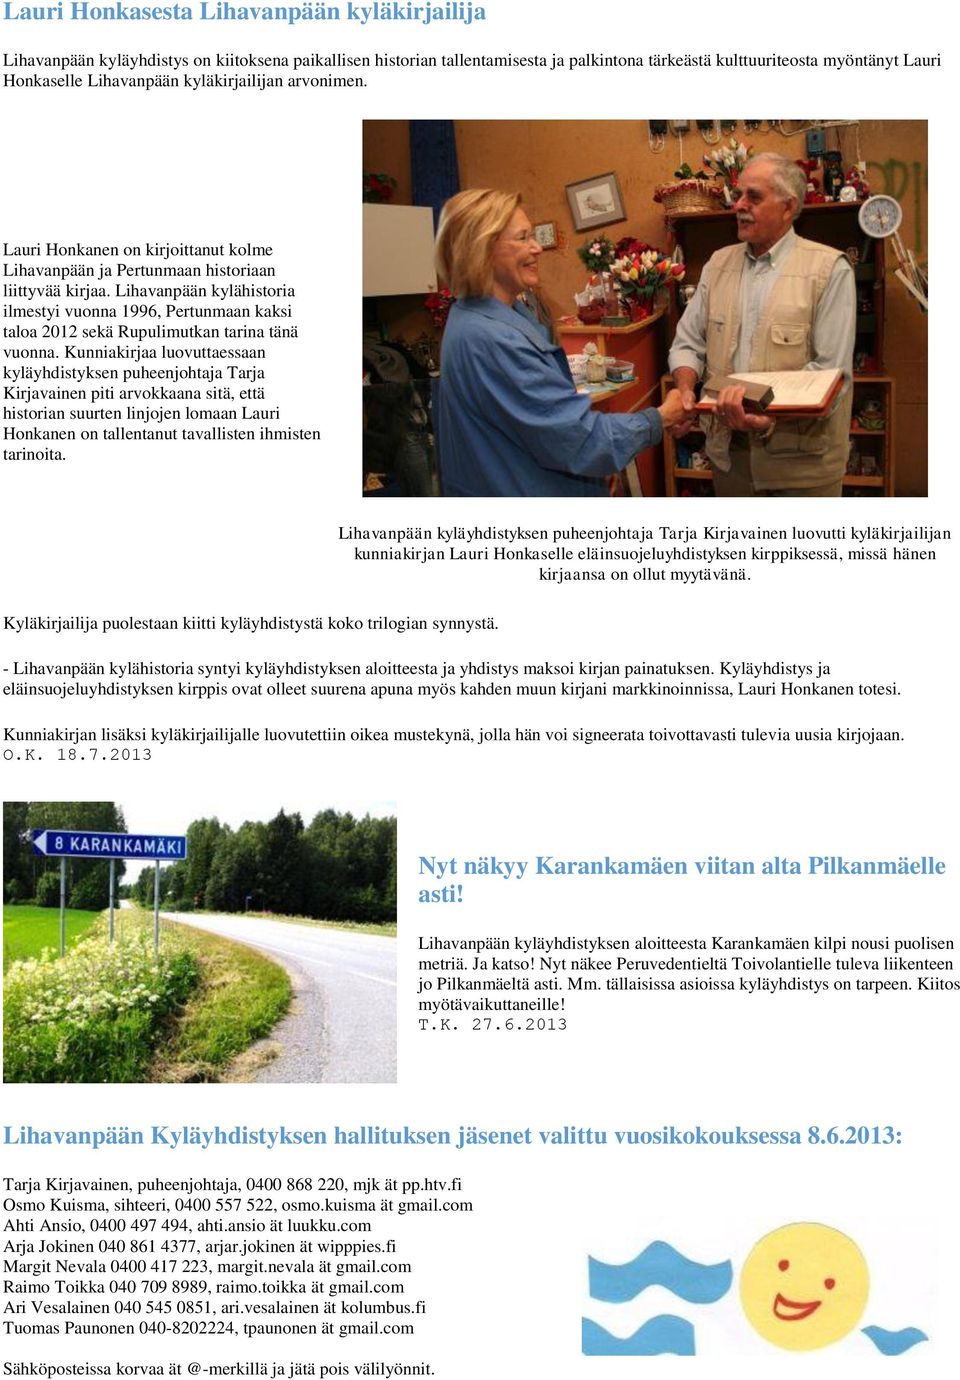 Lihavanpään kylähistoria ilmestyi vuonna 1996, Pertunmaan kaksi taloa 2012 sekä Rupulimutkan tarina tänä vuonna.